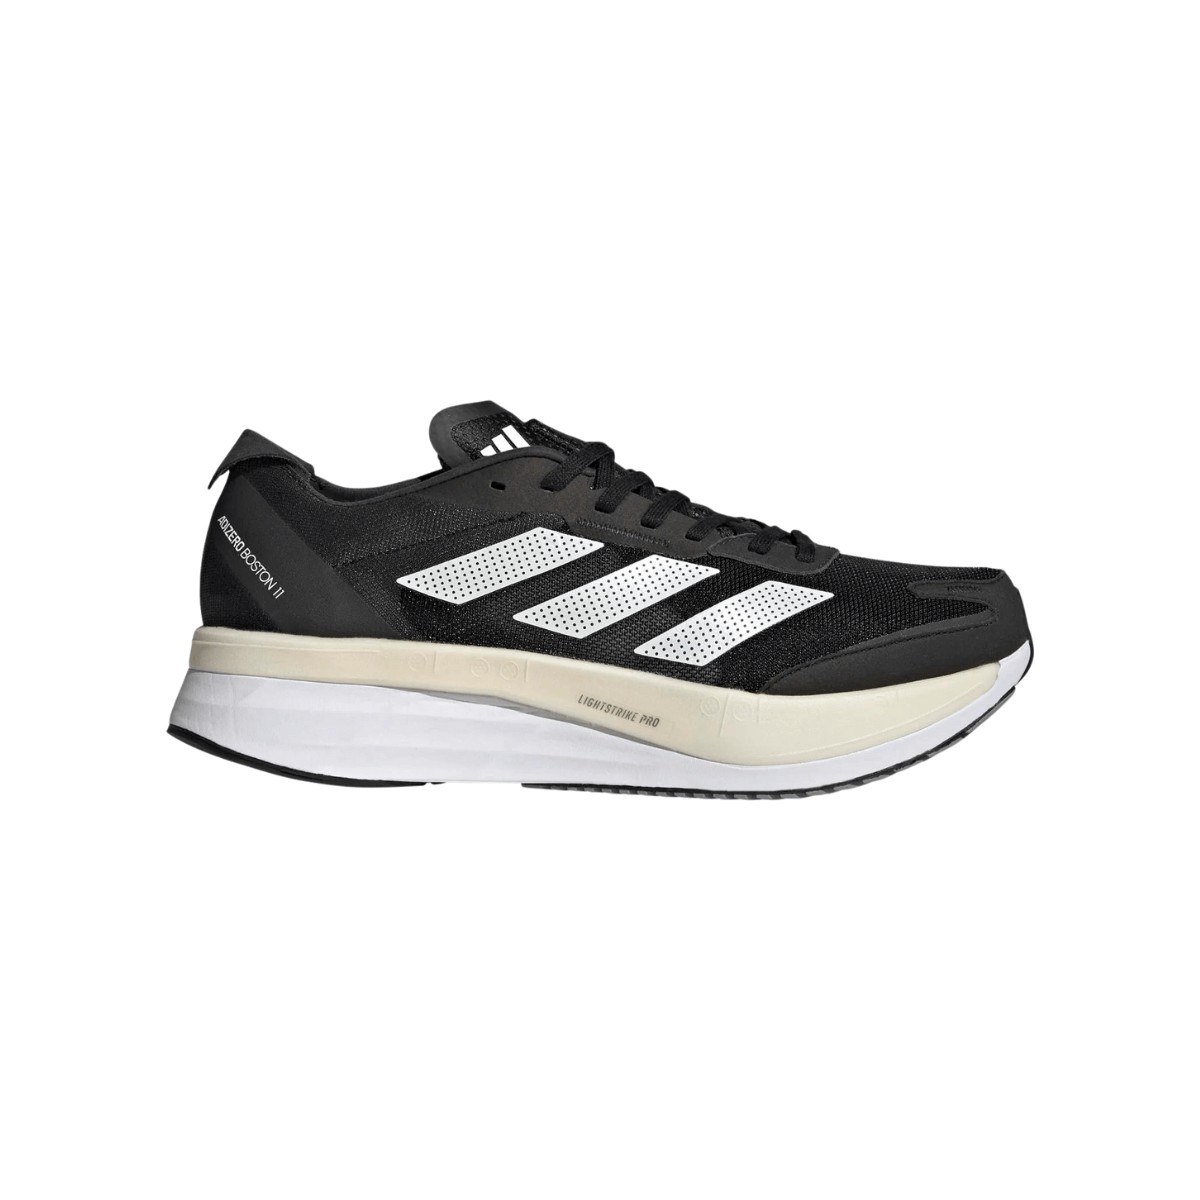 Adidas Adizero Boston 11 Wide Shoes Black Beige AW22, Size UK 7